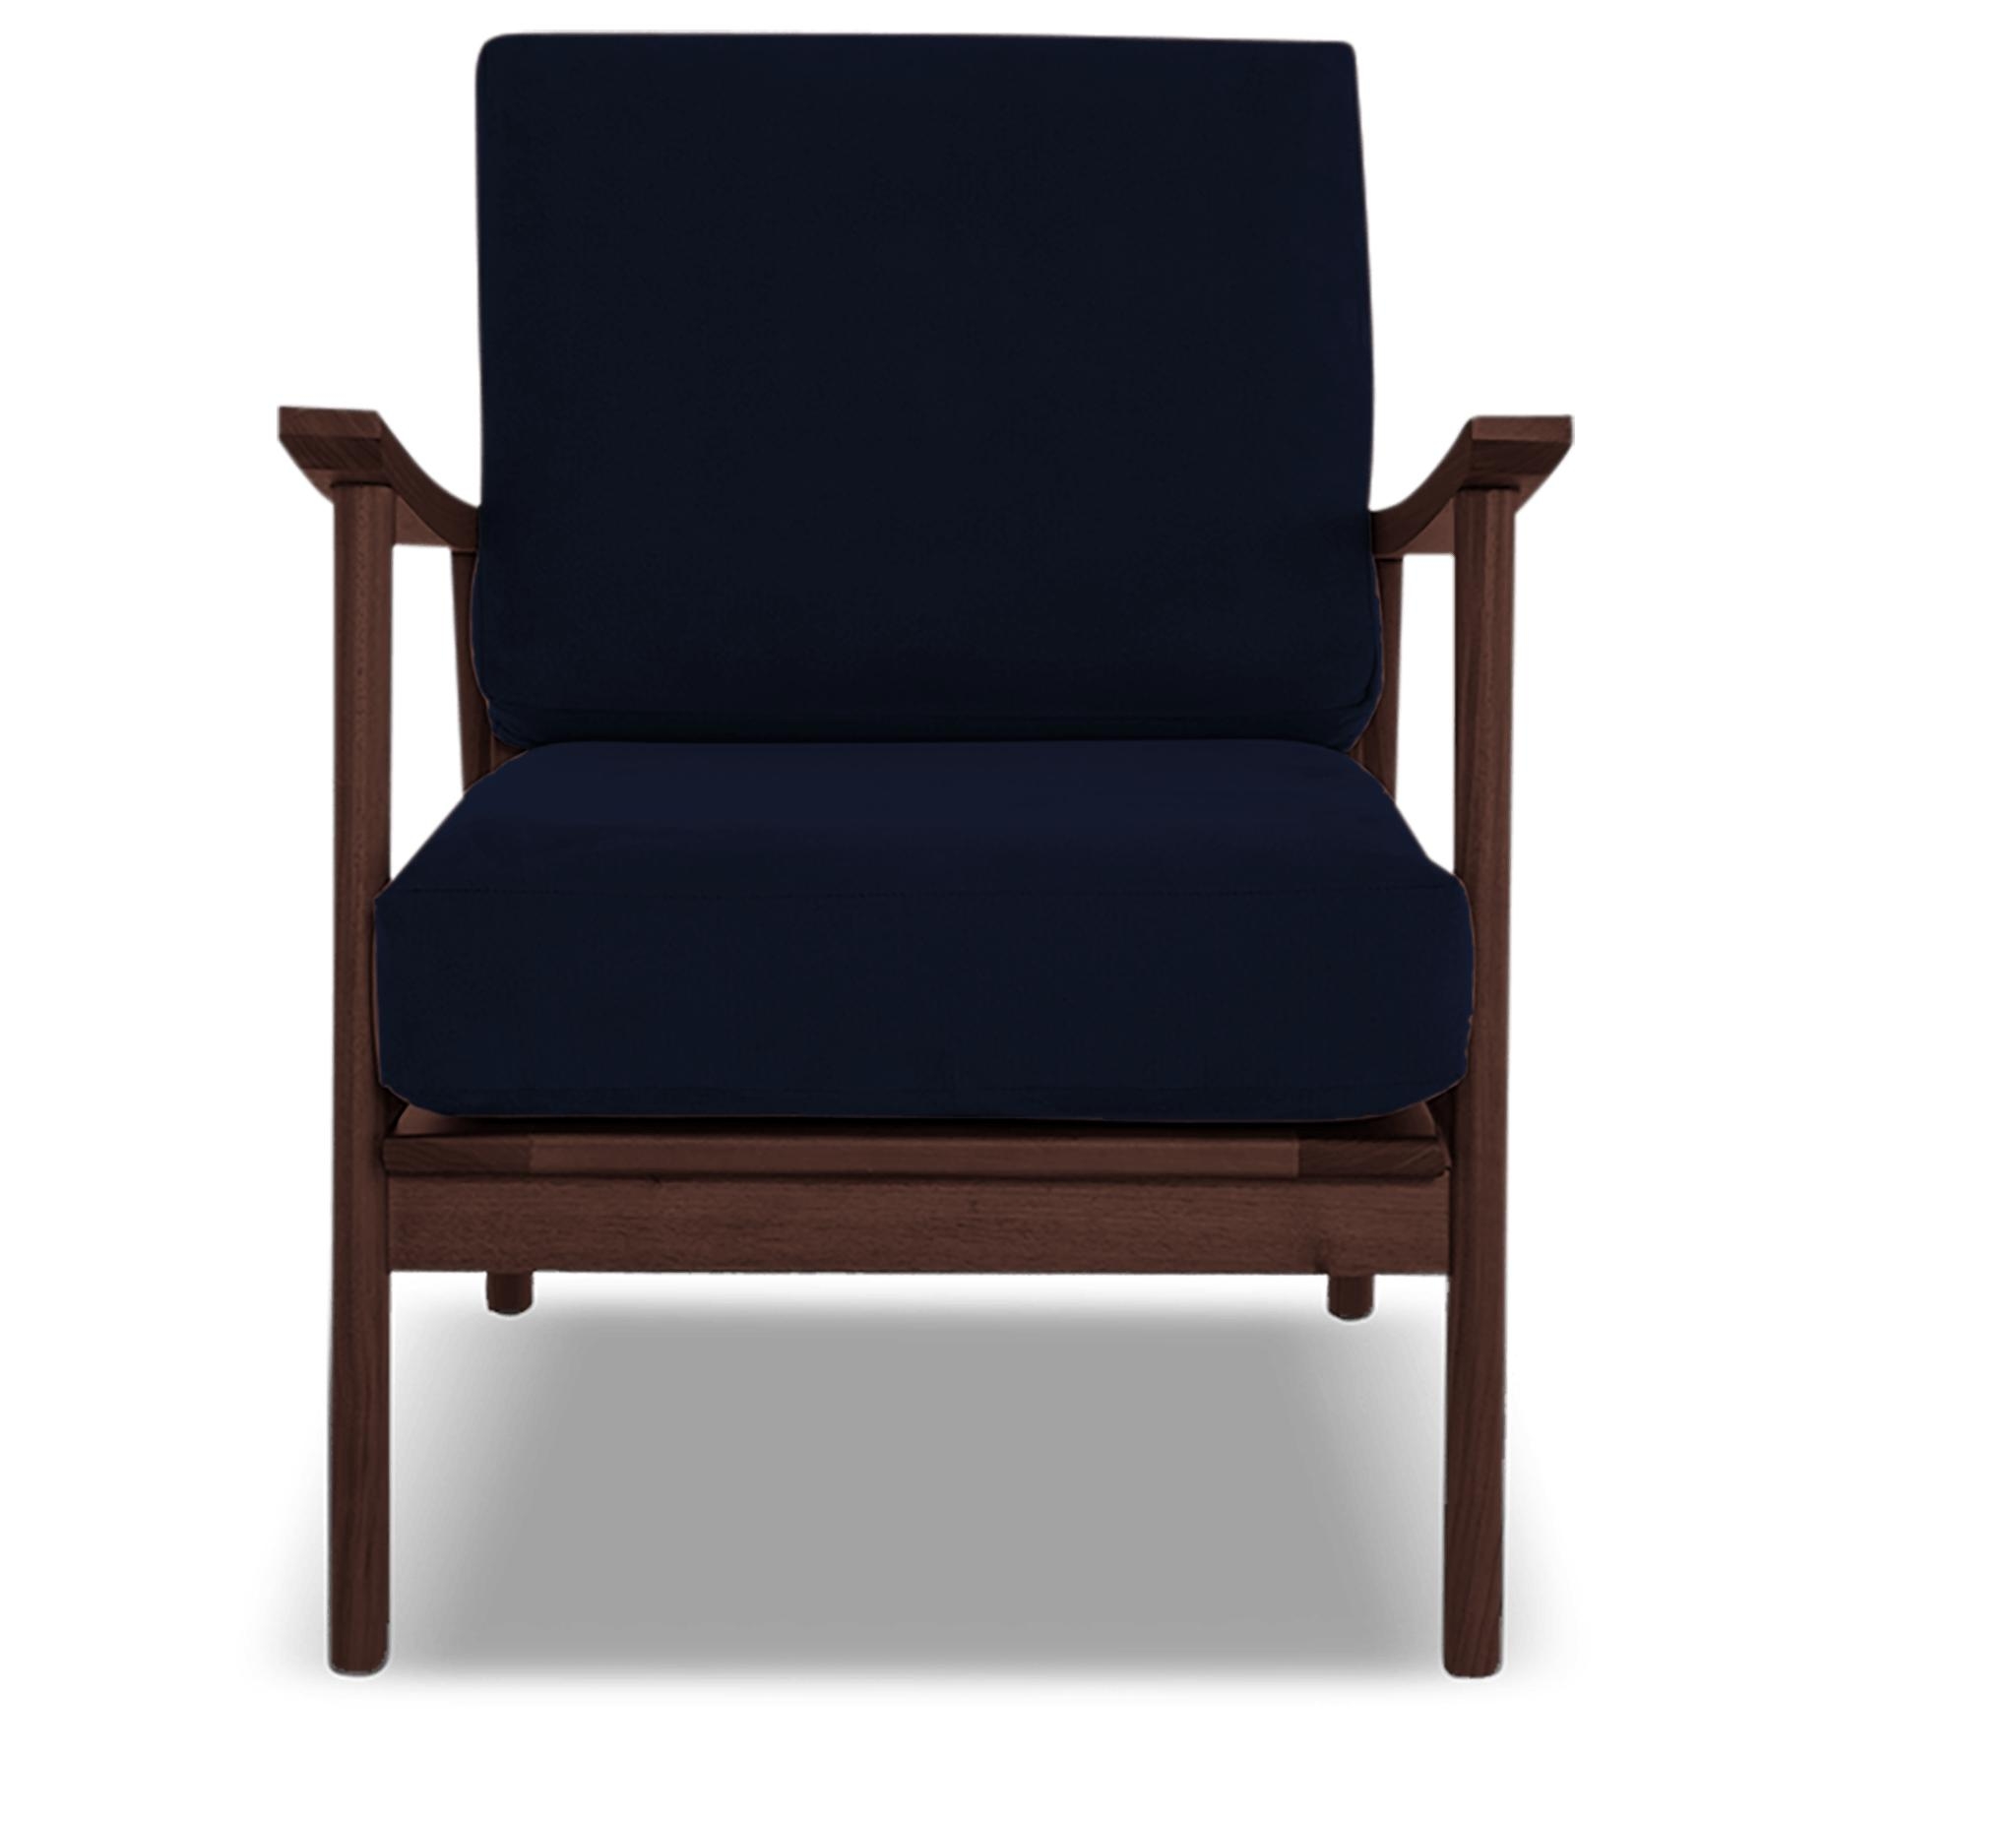 Blue Paley Mid Century Modern Chair - Bentley Indigo - Walnut - Image 0